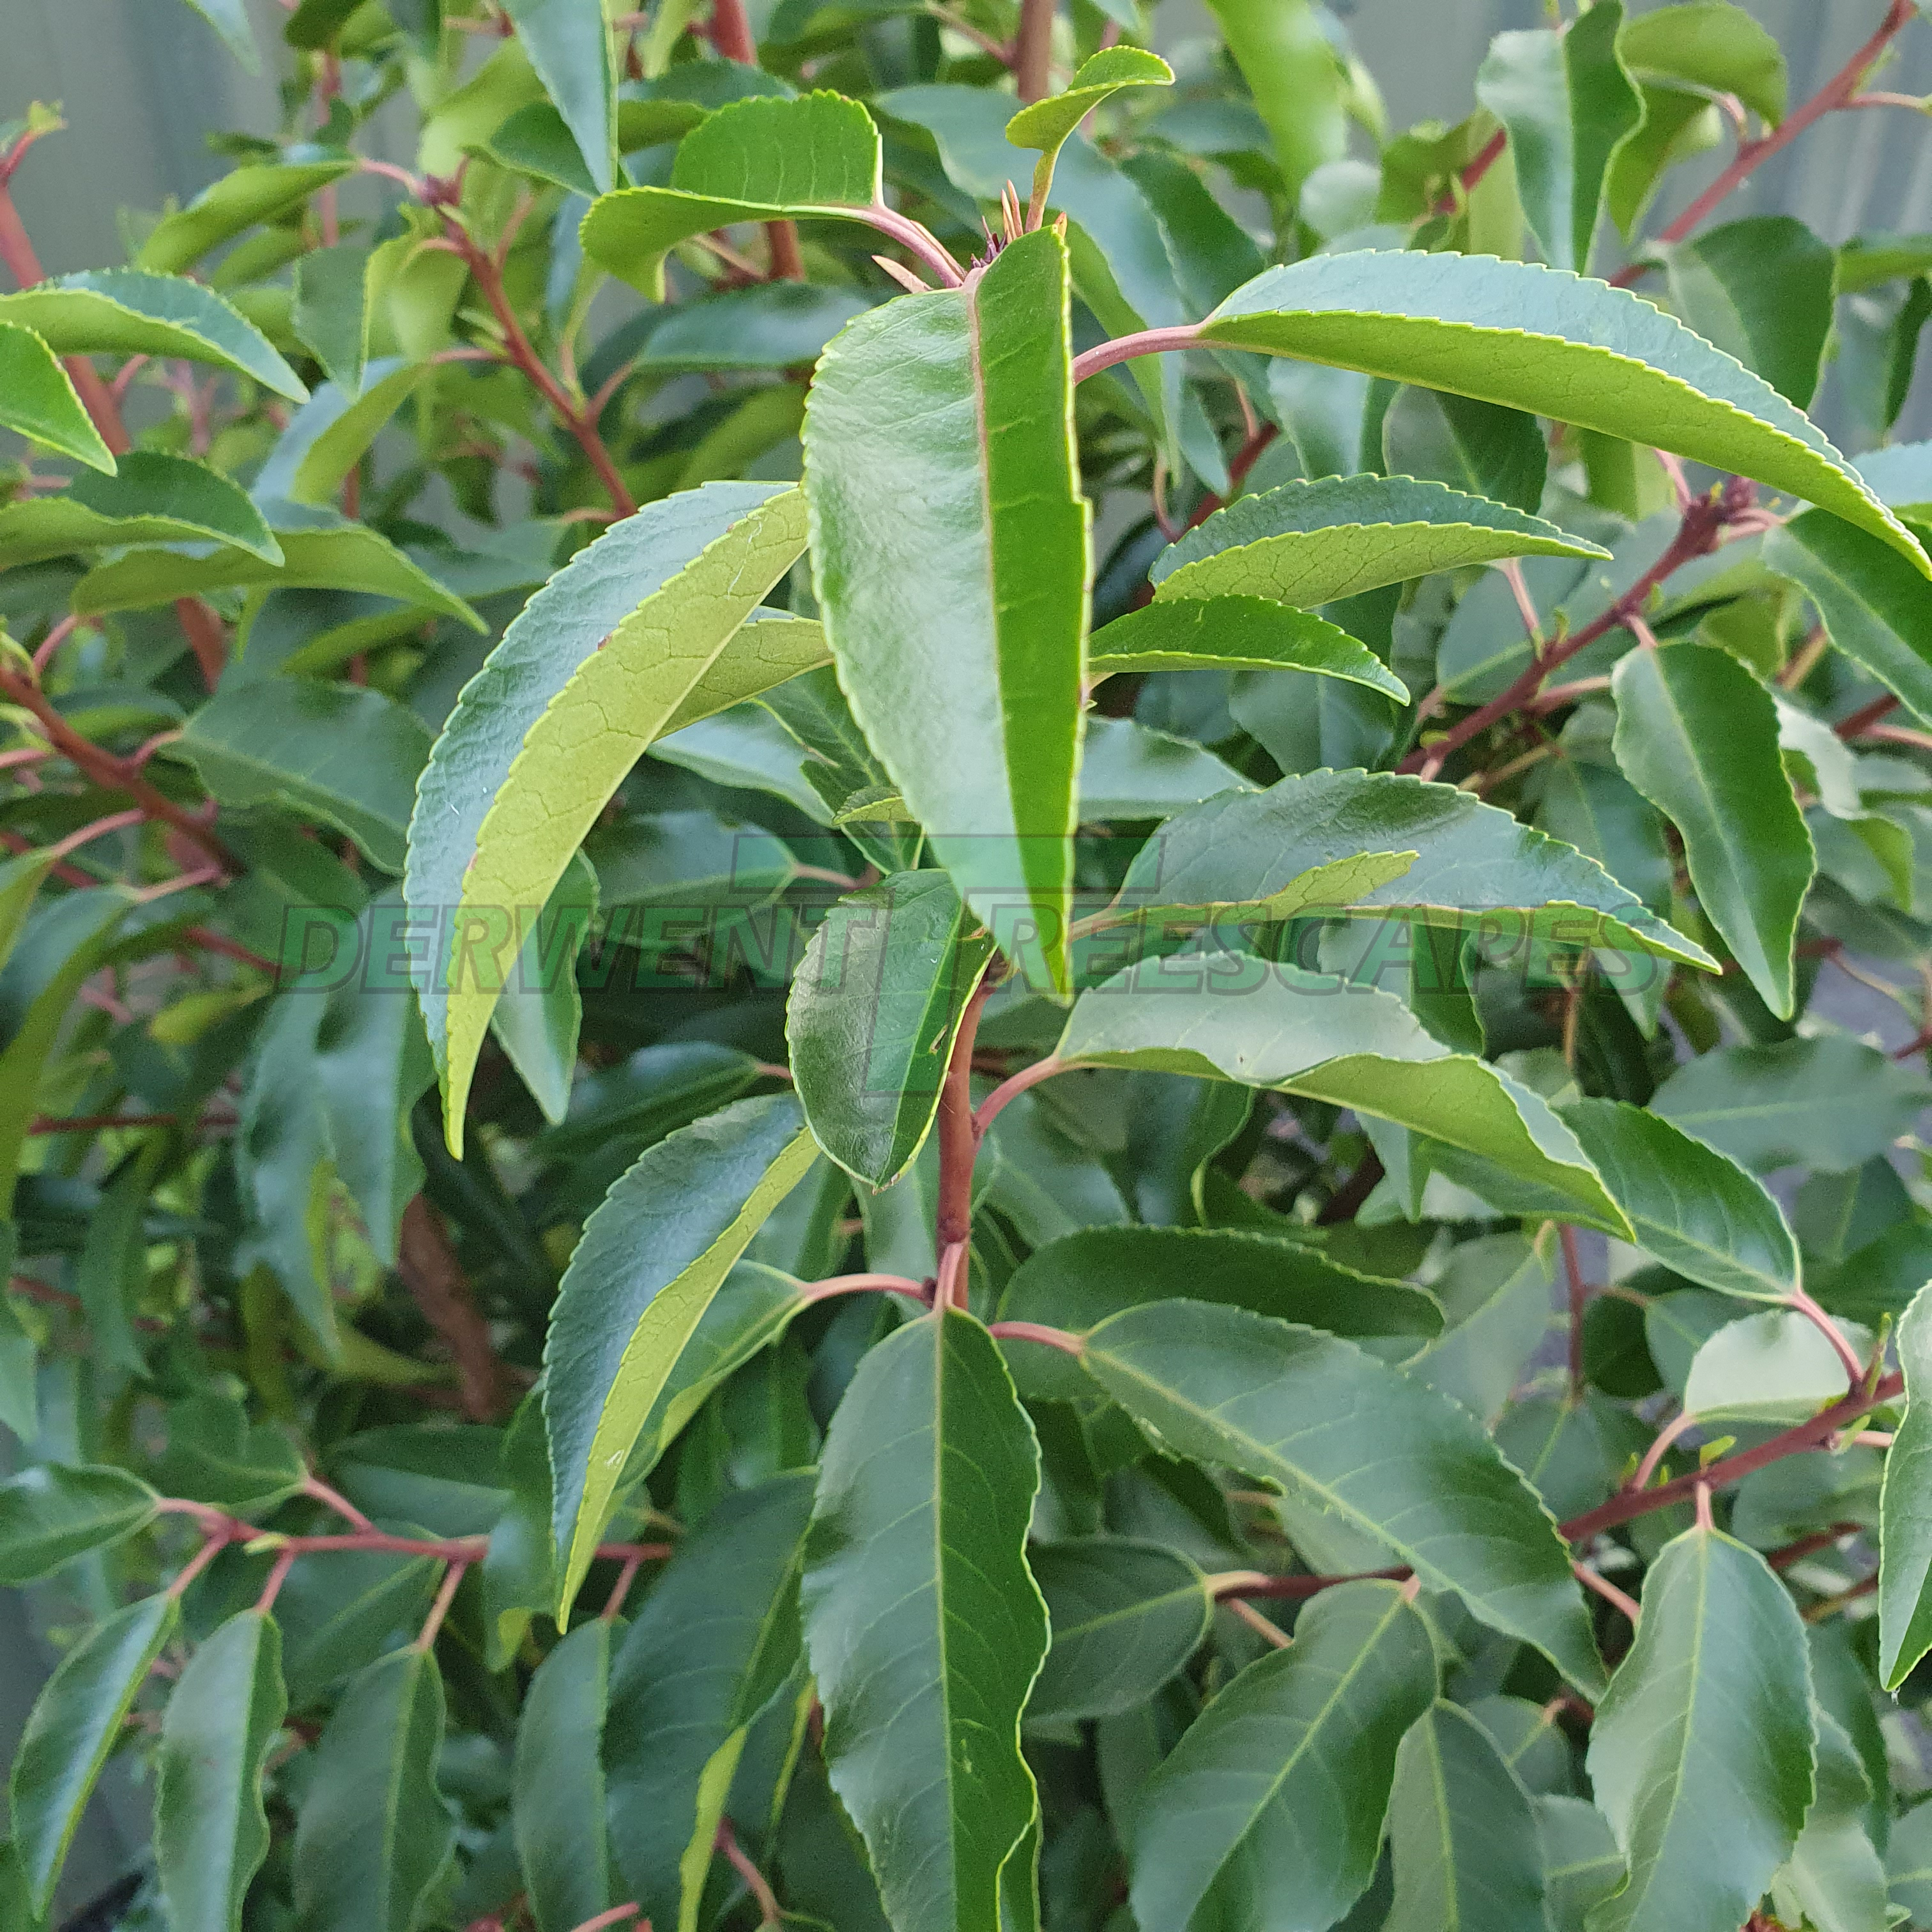 Prunus lusitanica - Portuguese Laurel